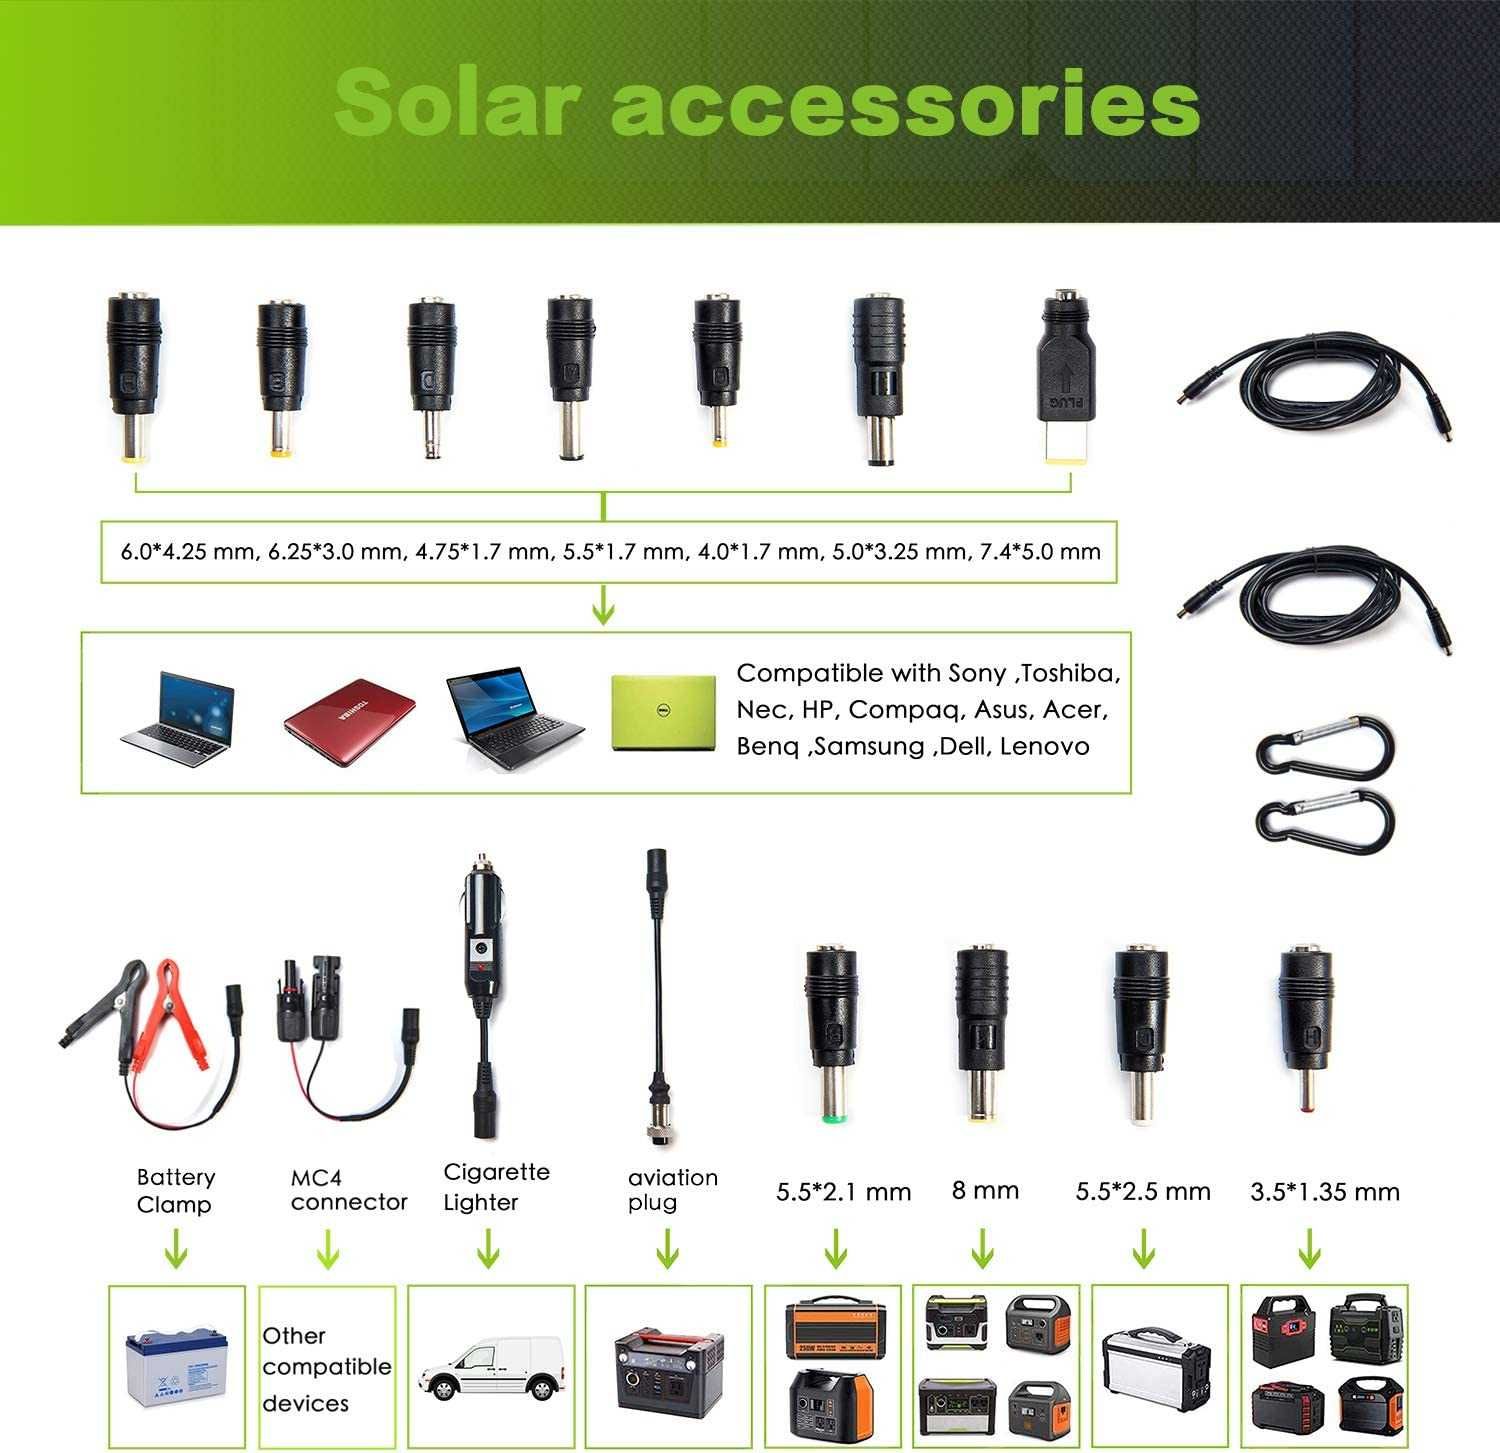 TopSolar 100W портативная солнечная складная панель для зарядки [США]